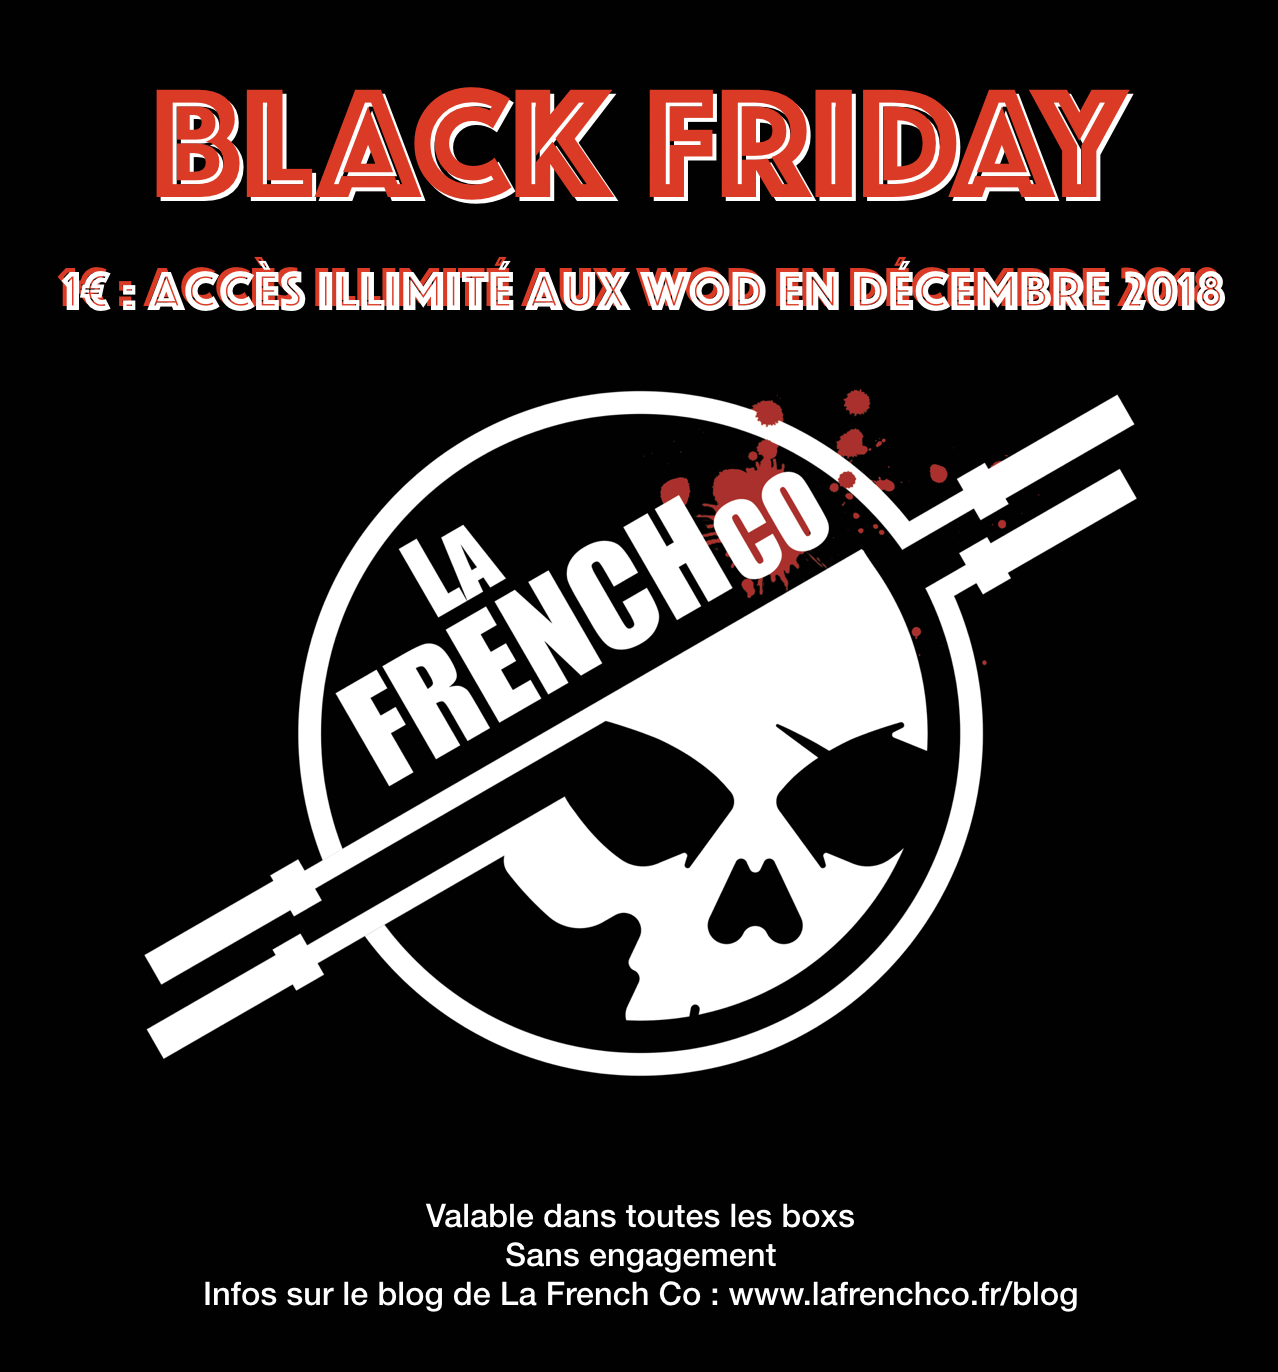 Black Friday 2018 : Accès illimité en décembre 2018 pour 1€